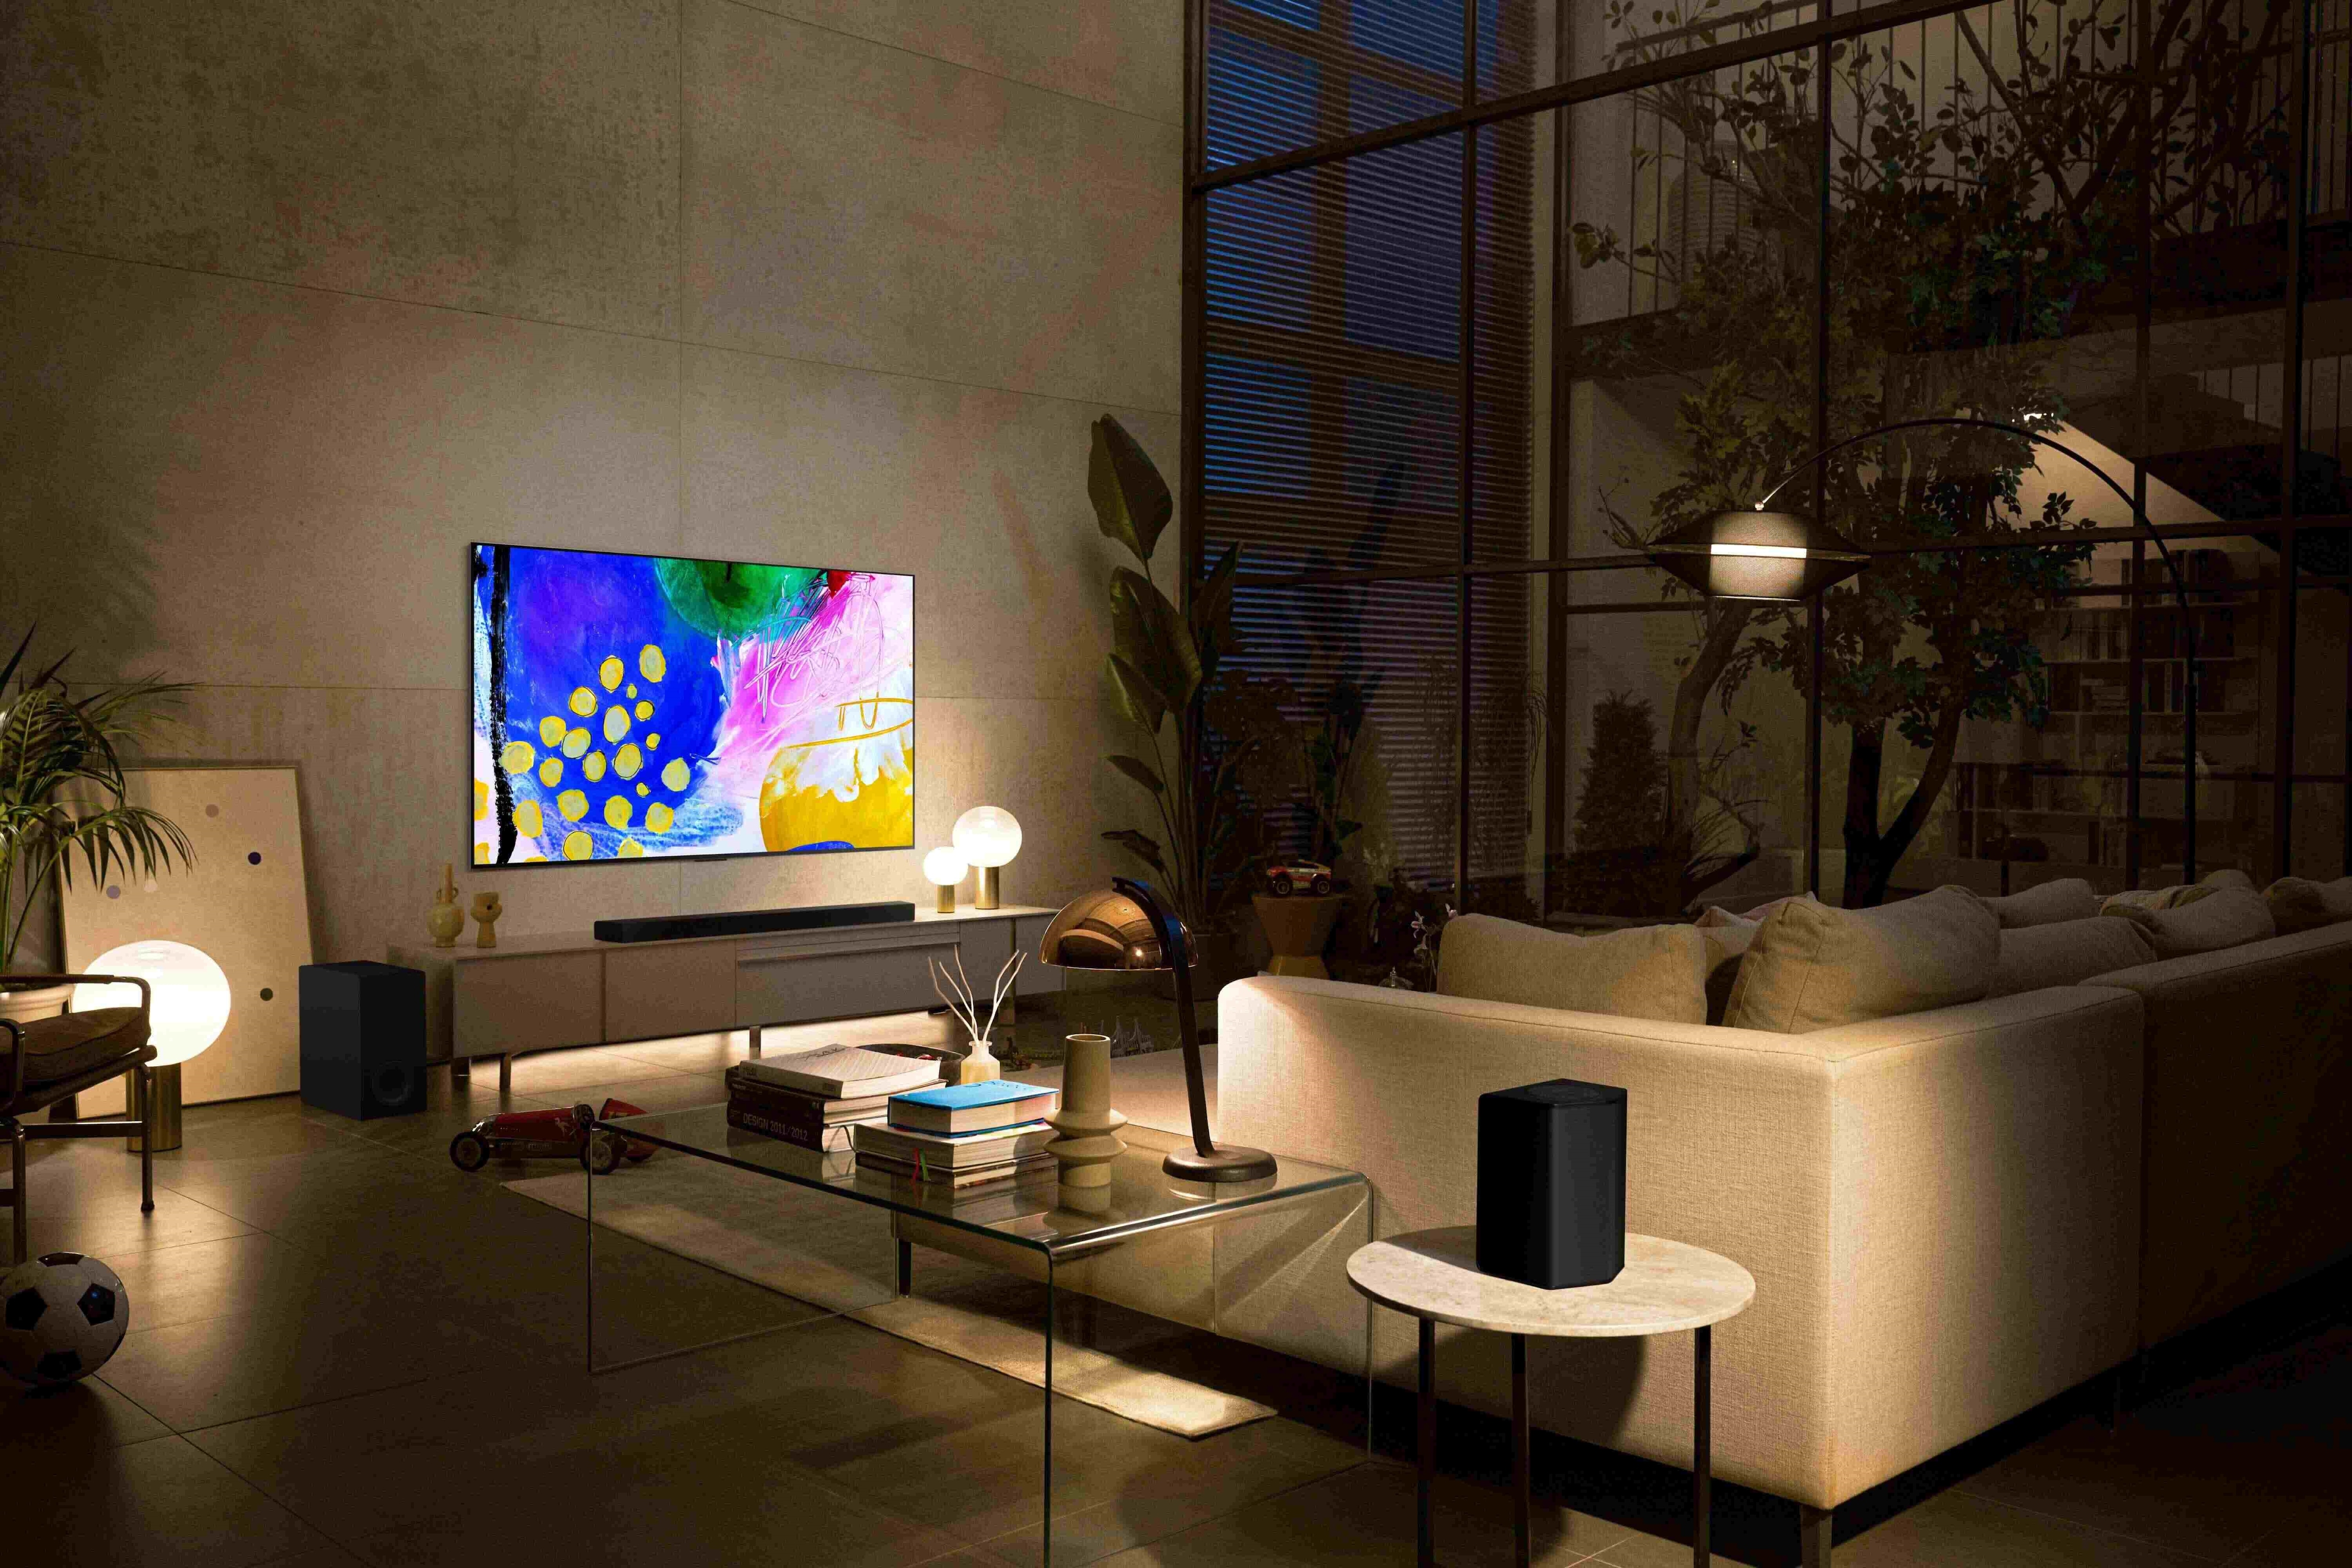 LG TV hängt in einem stylischen Wohnzimmer an der Wand.